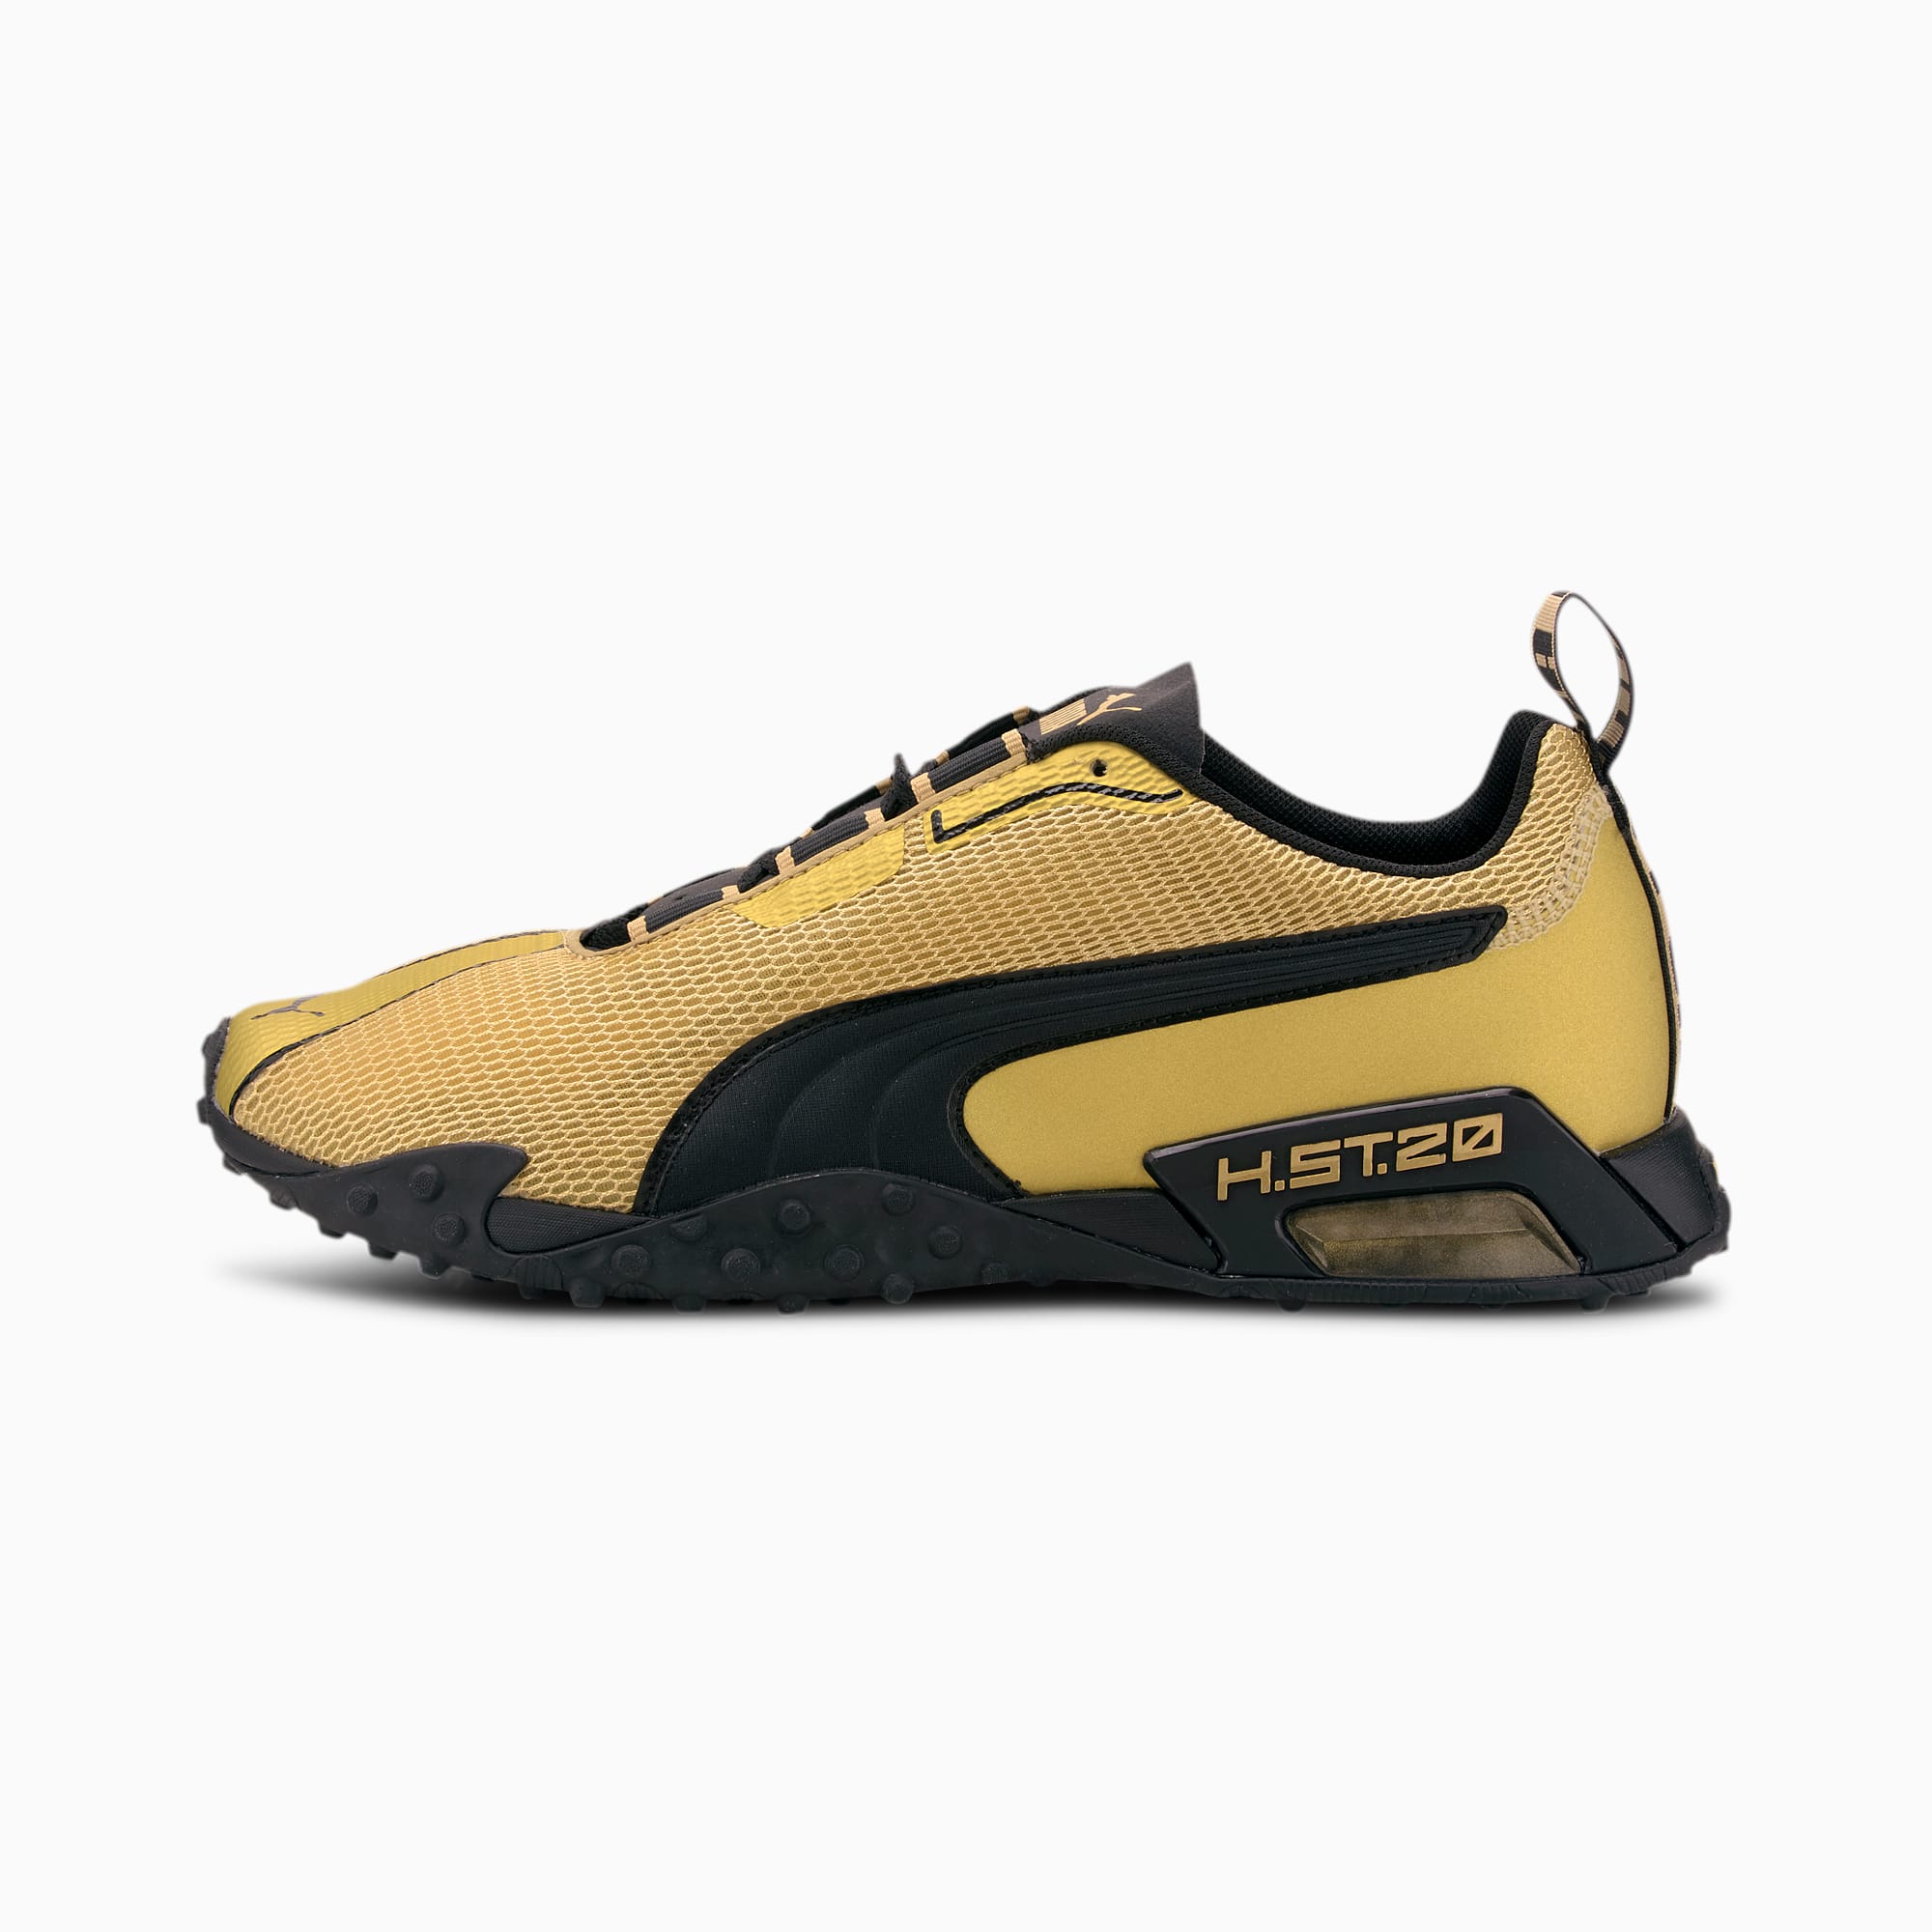 H.ST.20 OG Gold Running Shoes | PUMA Новинки | PUMA